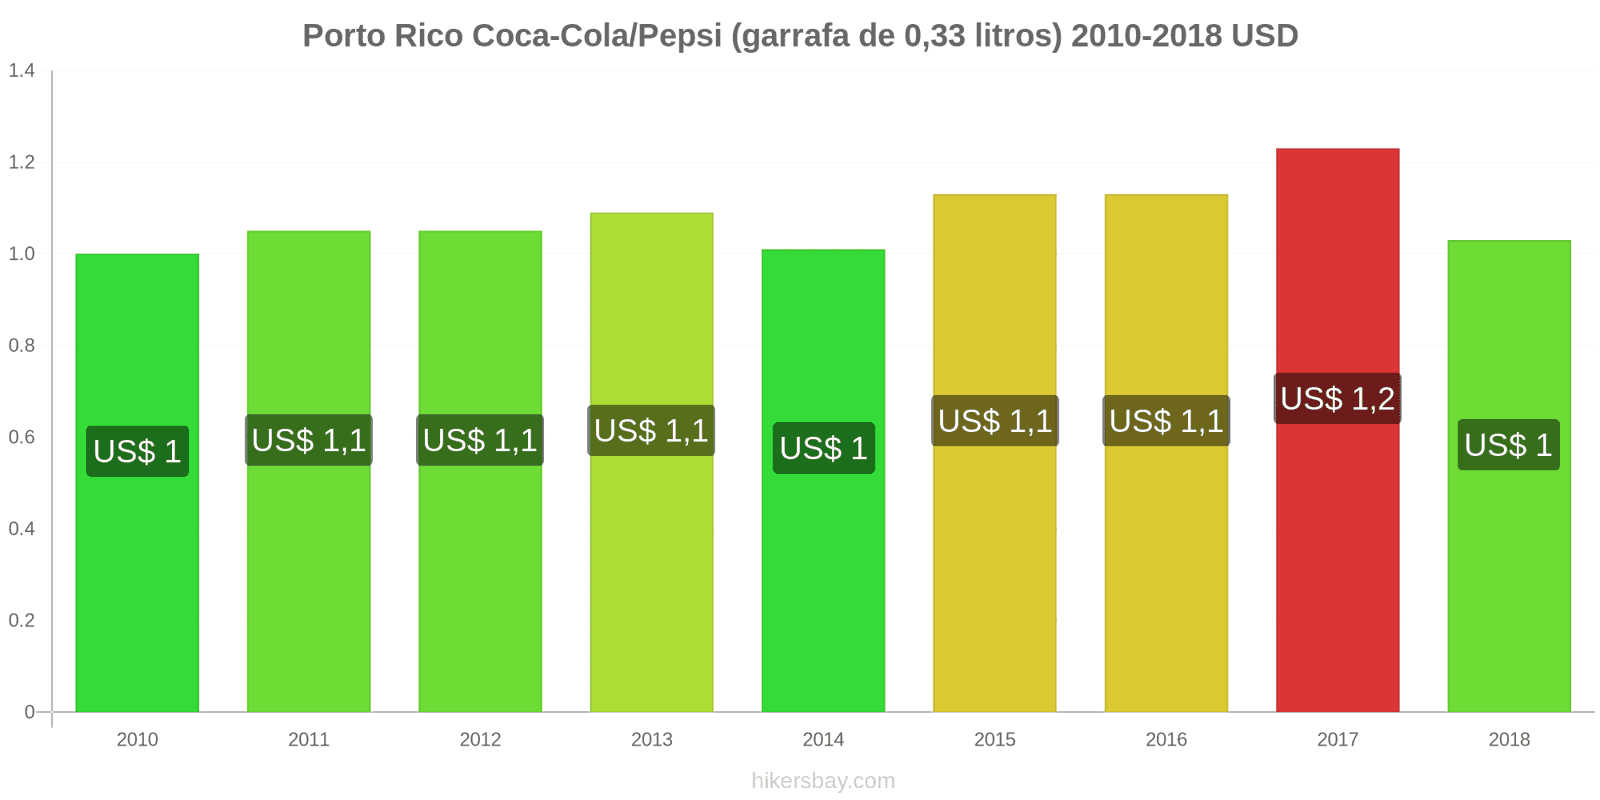 Porto Rico mudanças de preços Coca-Cola/Pepsi (garrafa de 0.33 litros) hikersbay.com